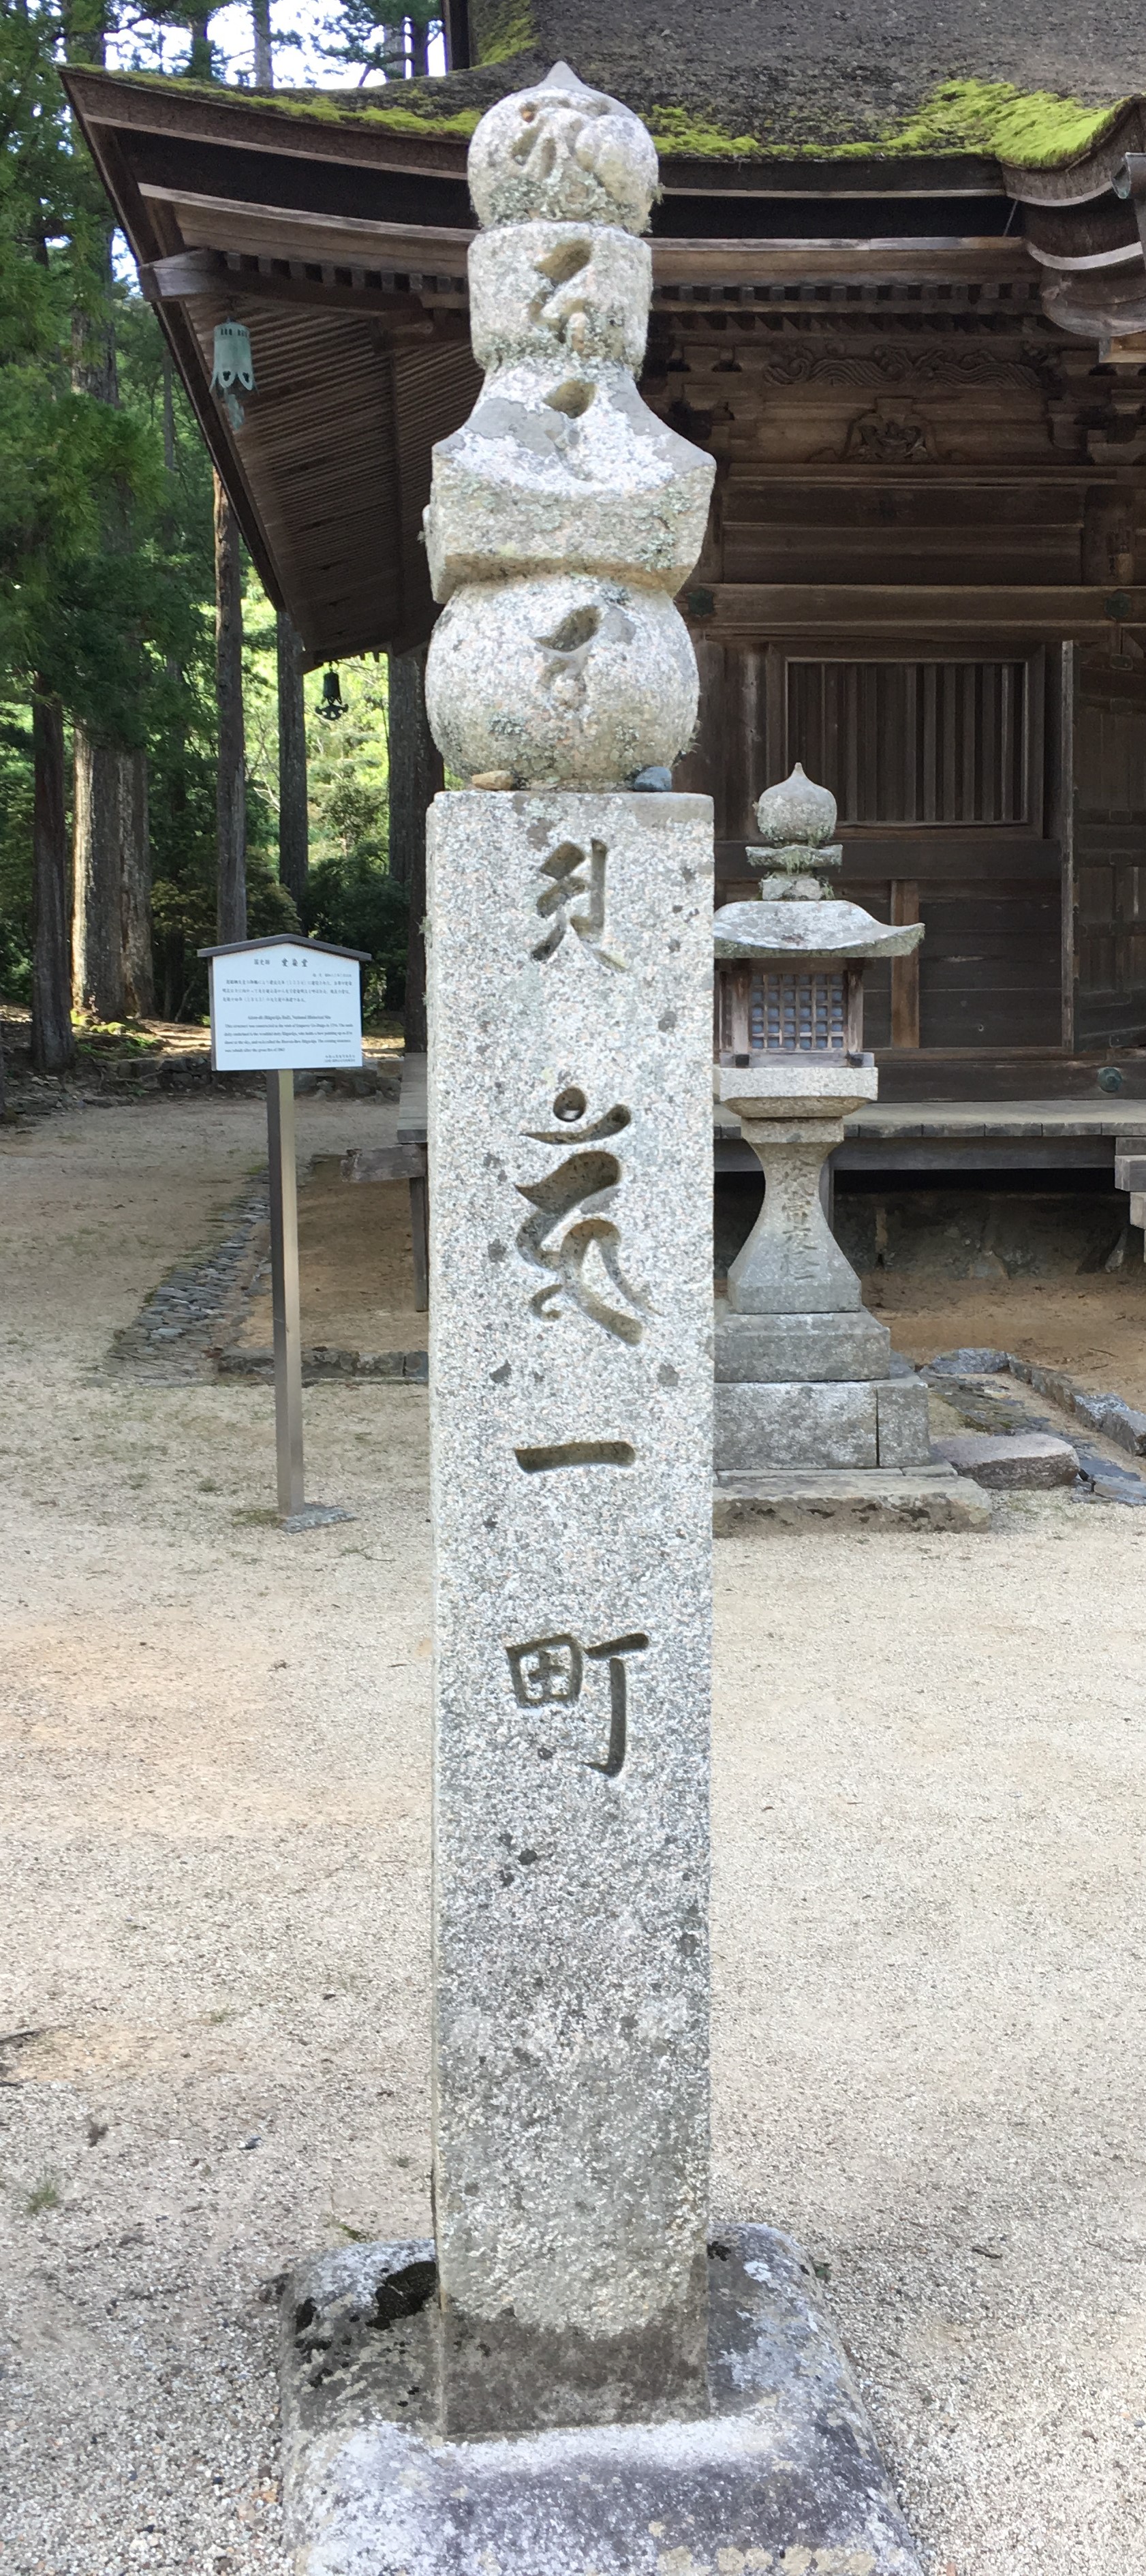 choishi marker at koyasan temple complex in wakayama